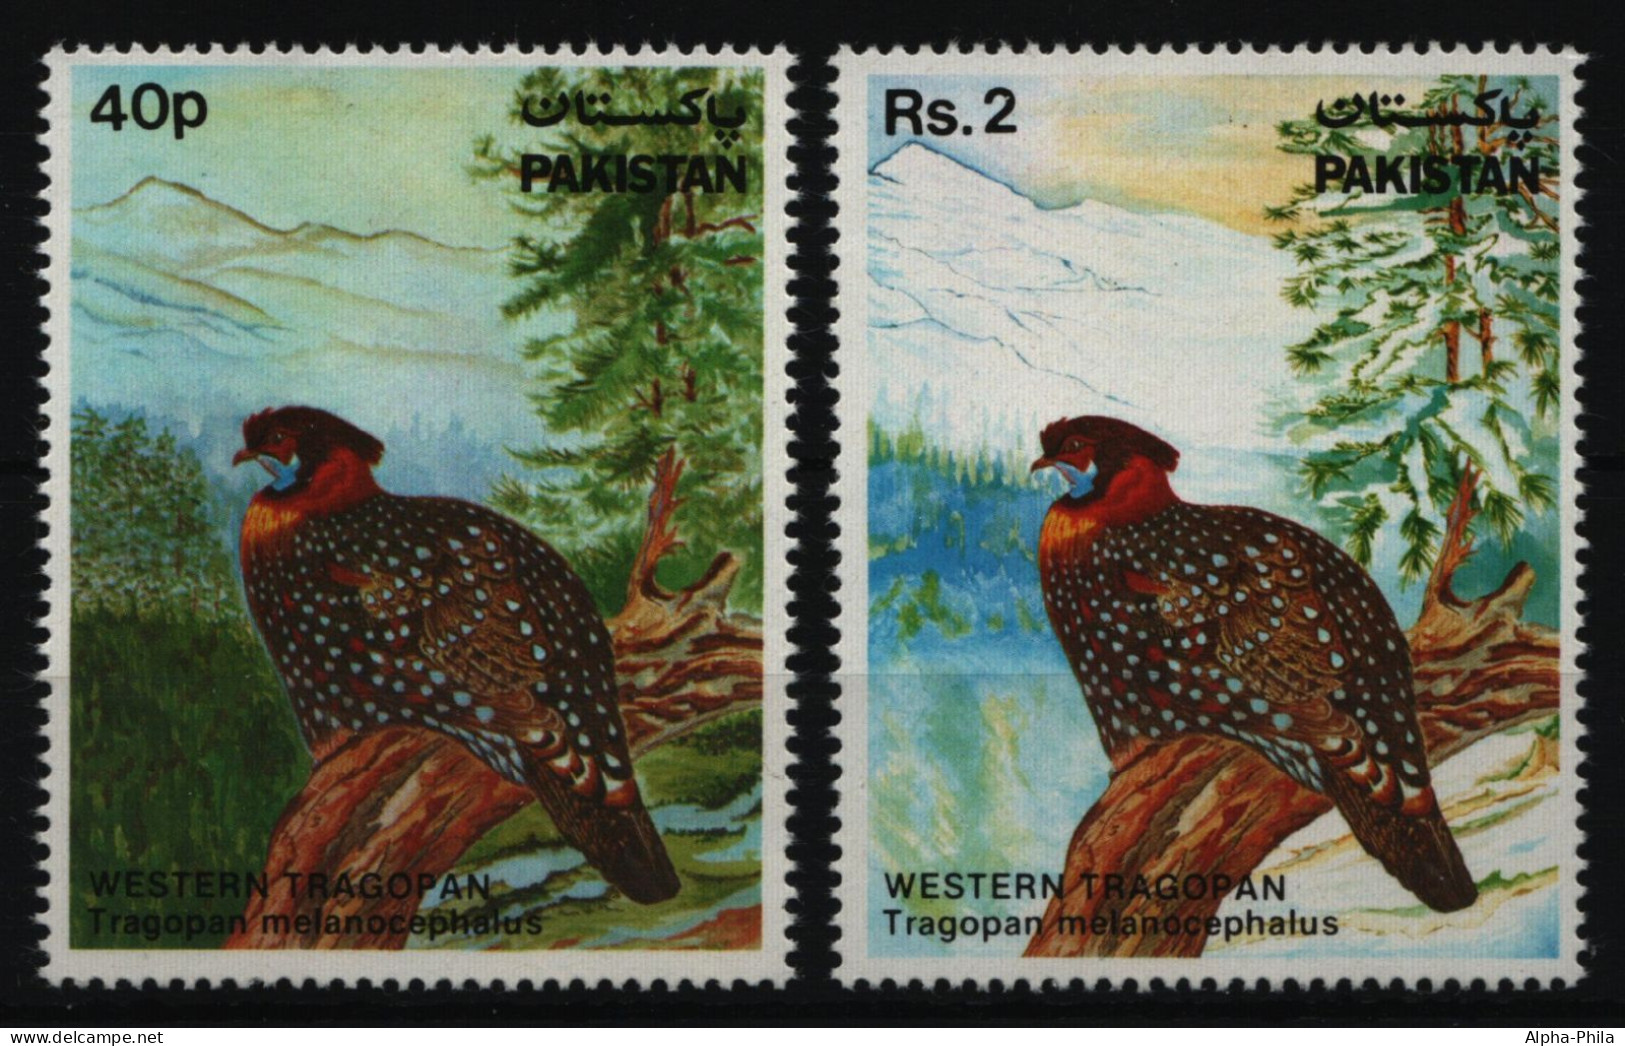 Pakistan 1981 - Mi-Nr. 560-561 ** - MNH - Vögel / Birds - Pakistan